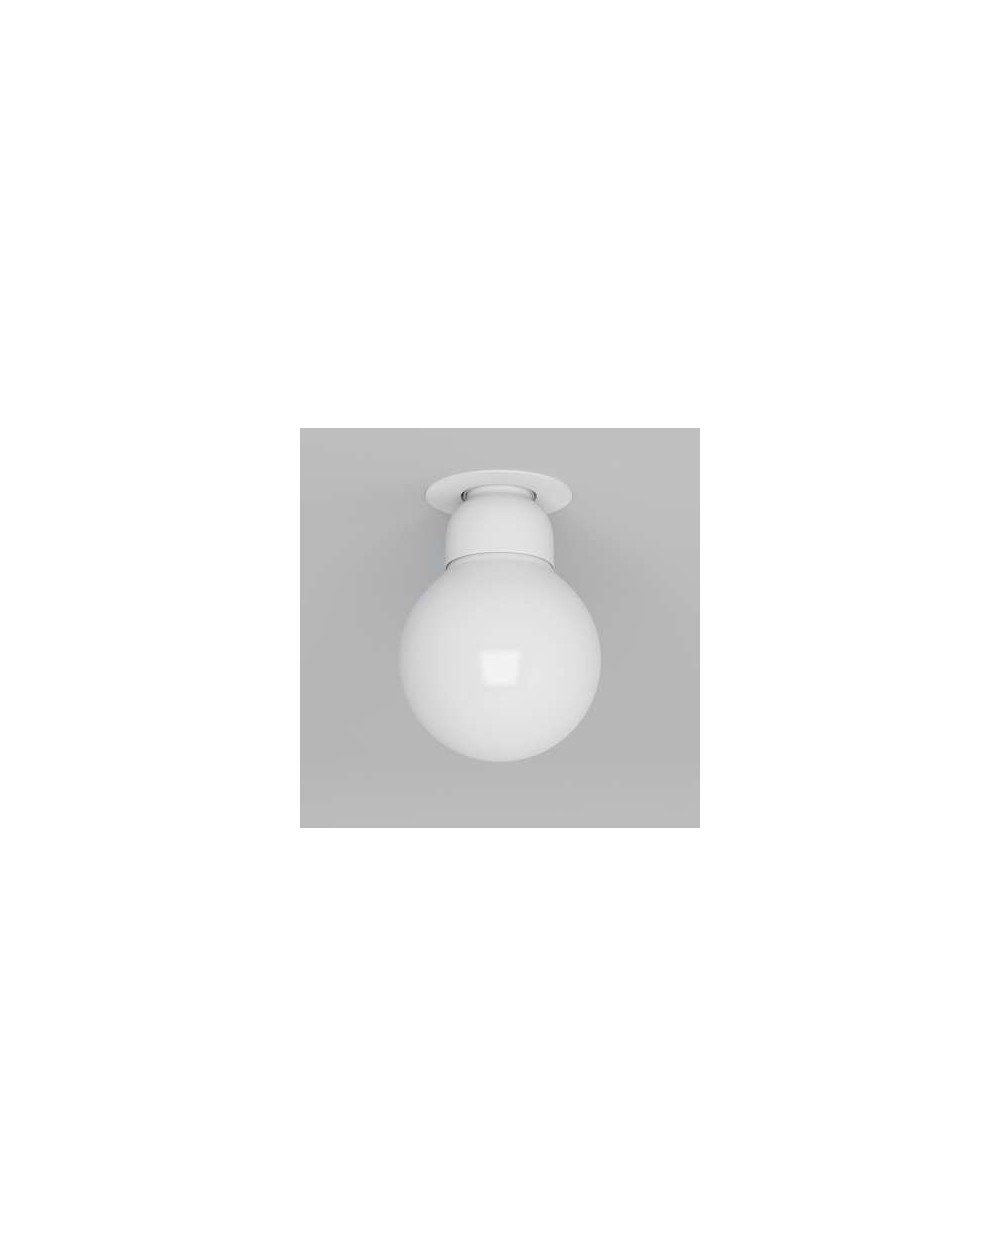 Natynkowa / lampa sufitowa Minimal Stropowy - wersja A1 NT 1 x 60W - Cleoni kolor biały czarny aluminium